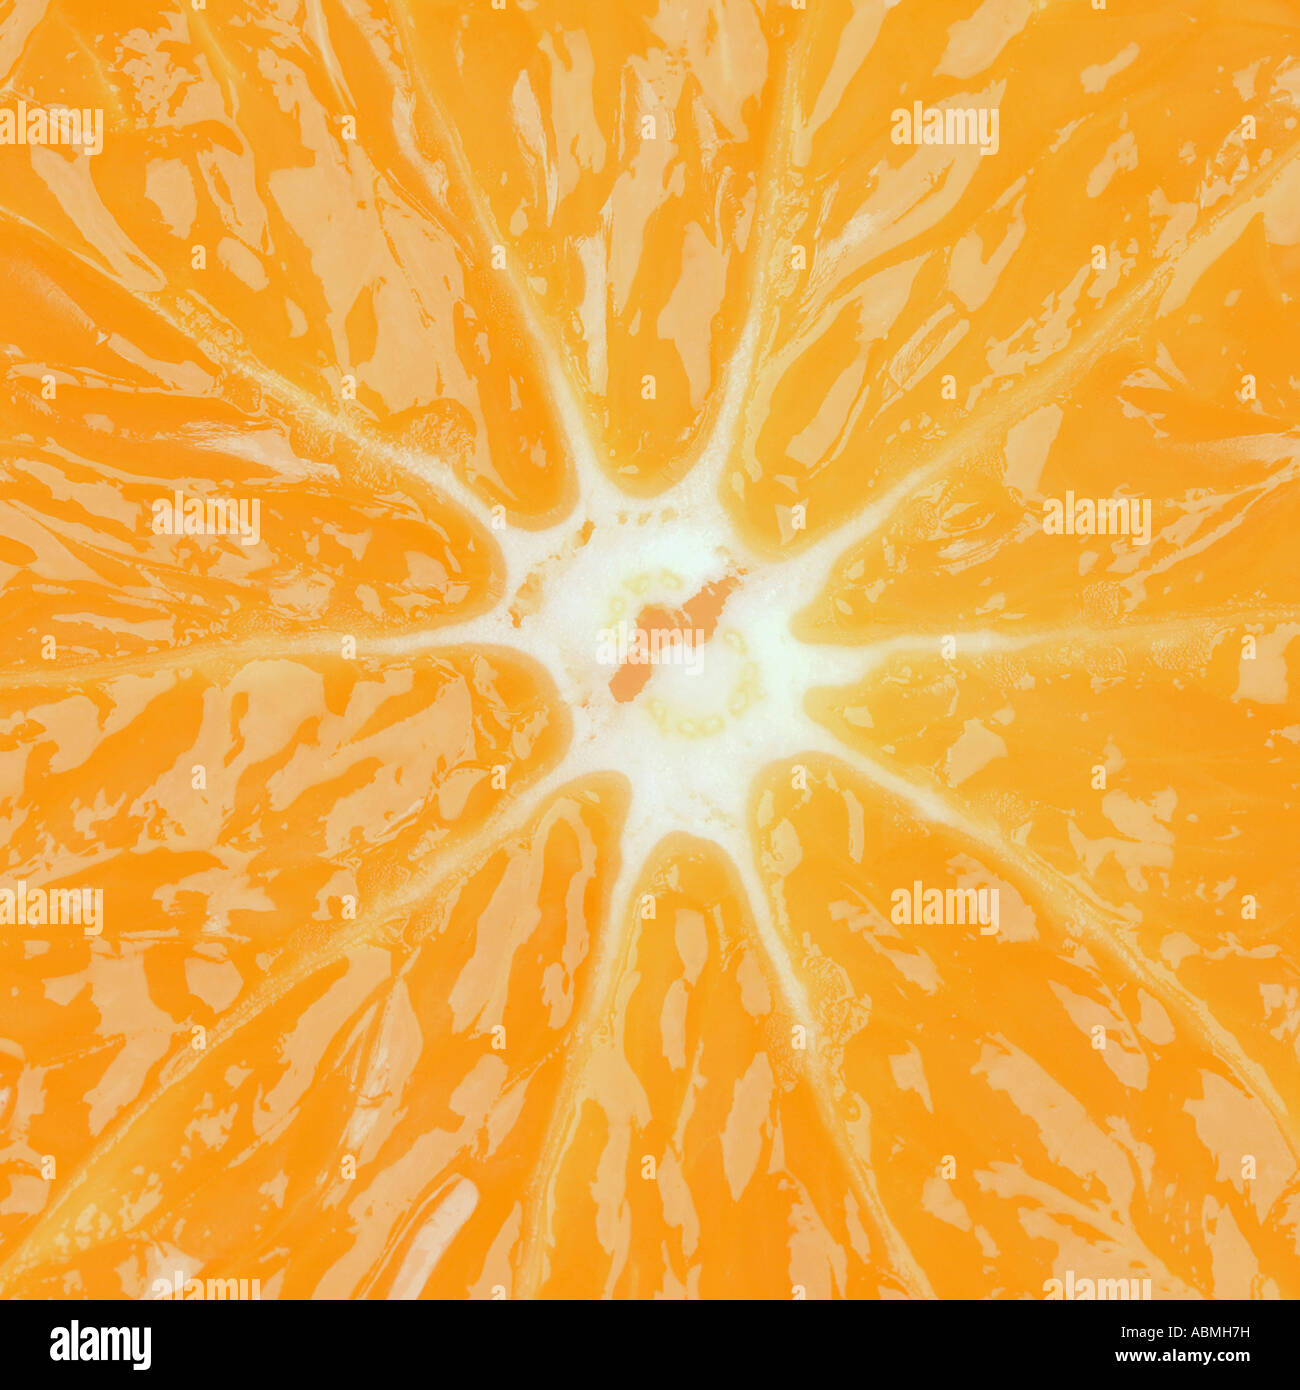 Macro Fotografía de una rodaja de naranja formato cuadrado Foto de stock